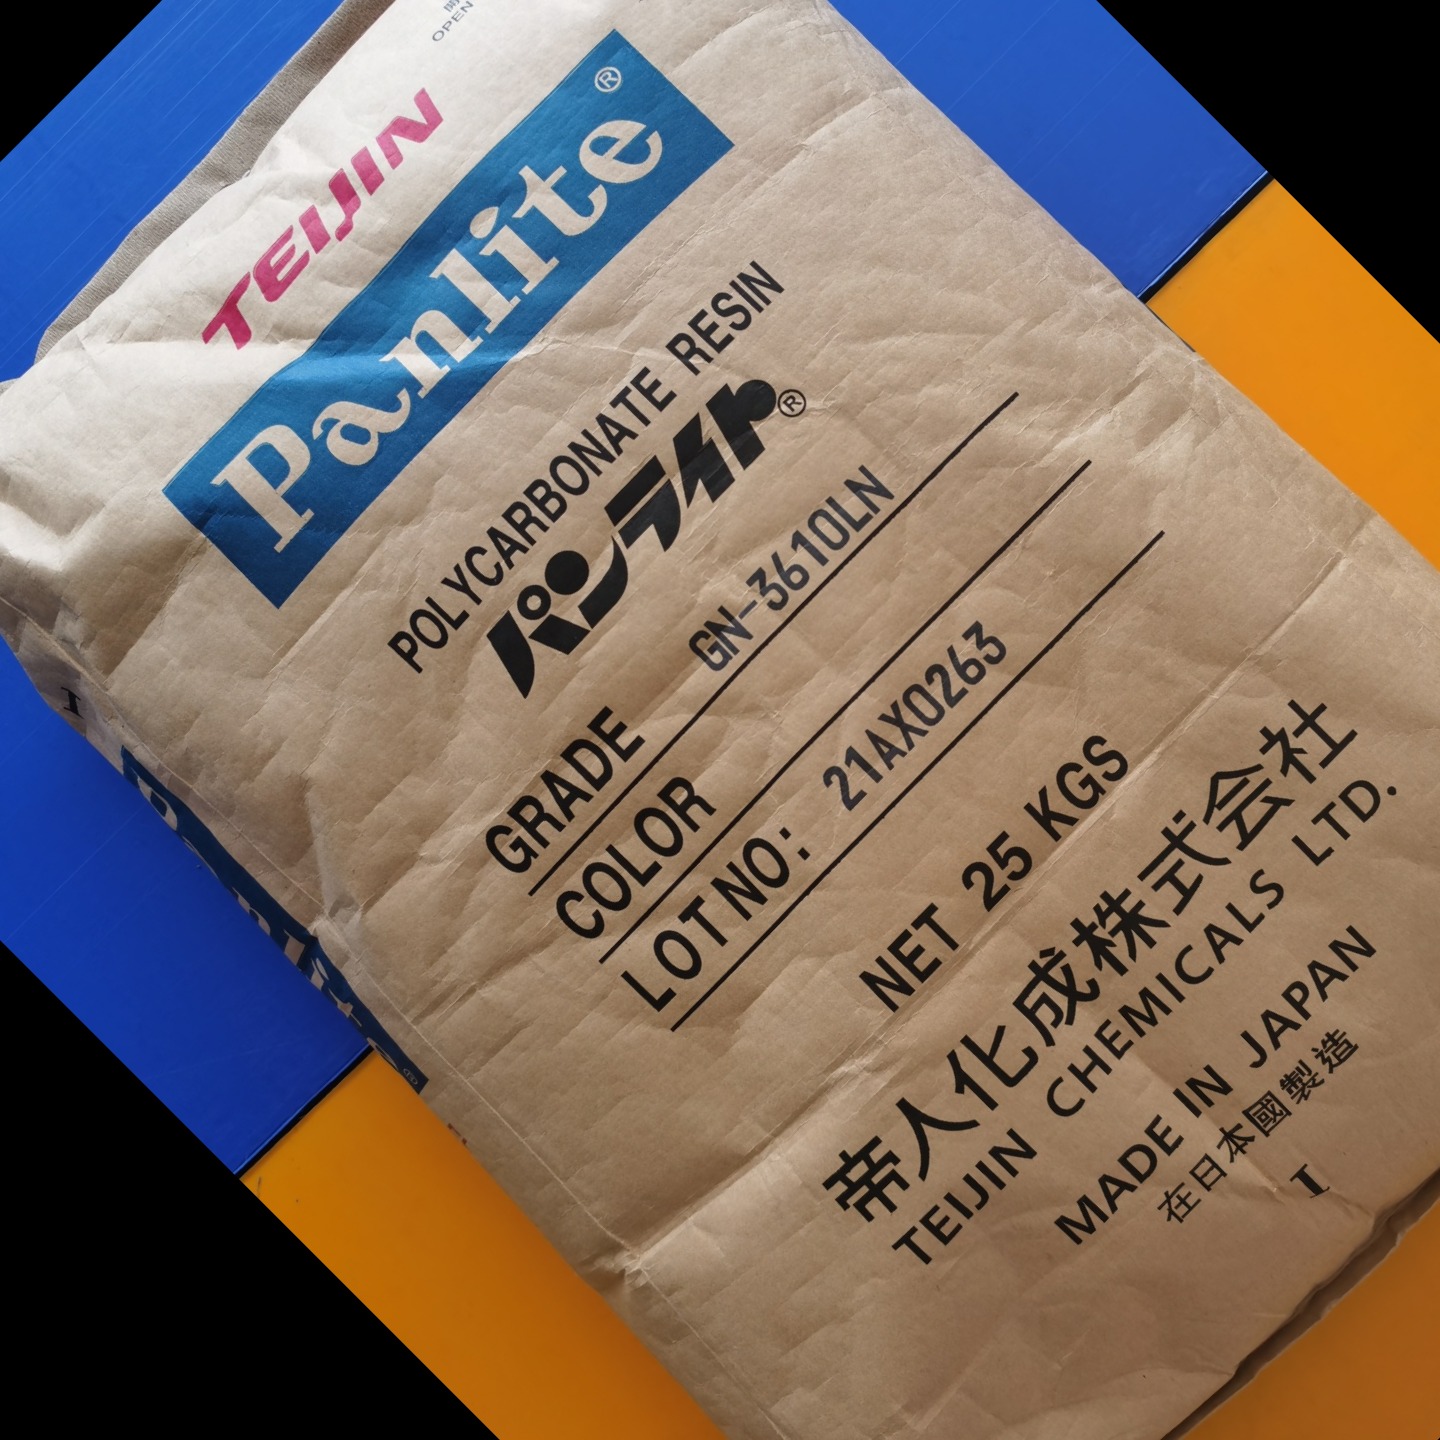 PC 日本帝人Panlite GM-9710 高刚性 耐化学性良好 玻纤增强材料